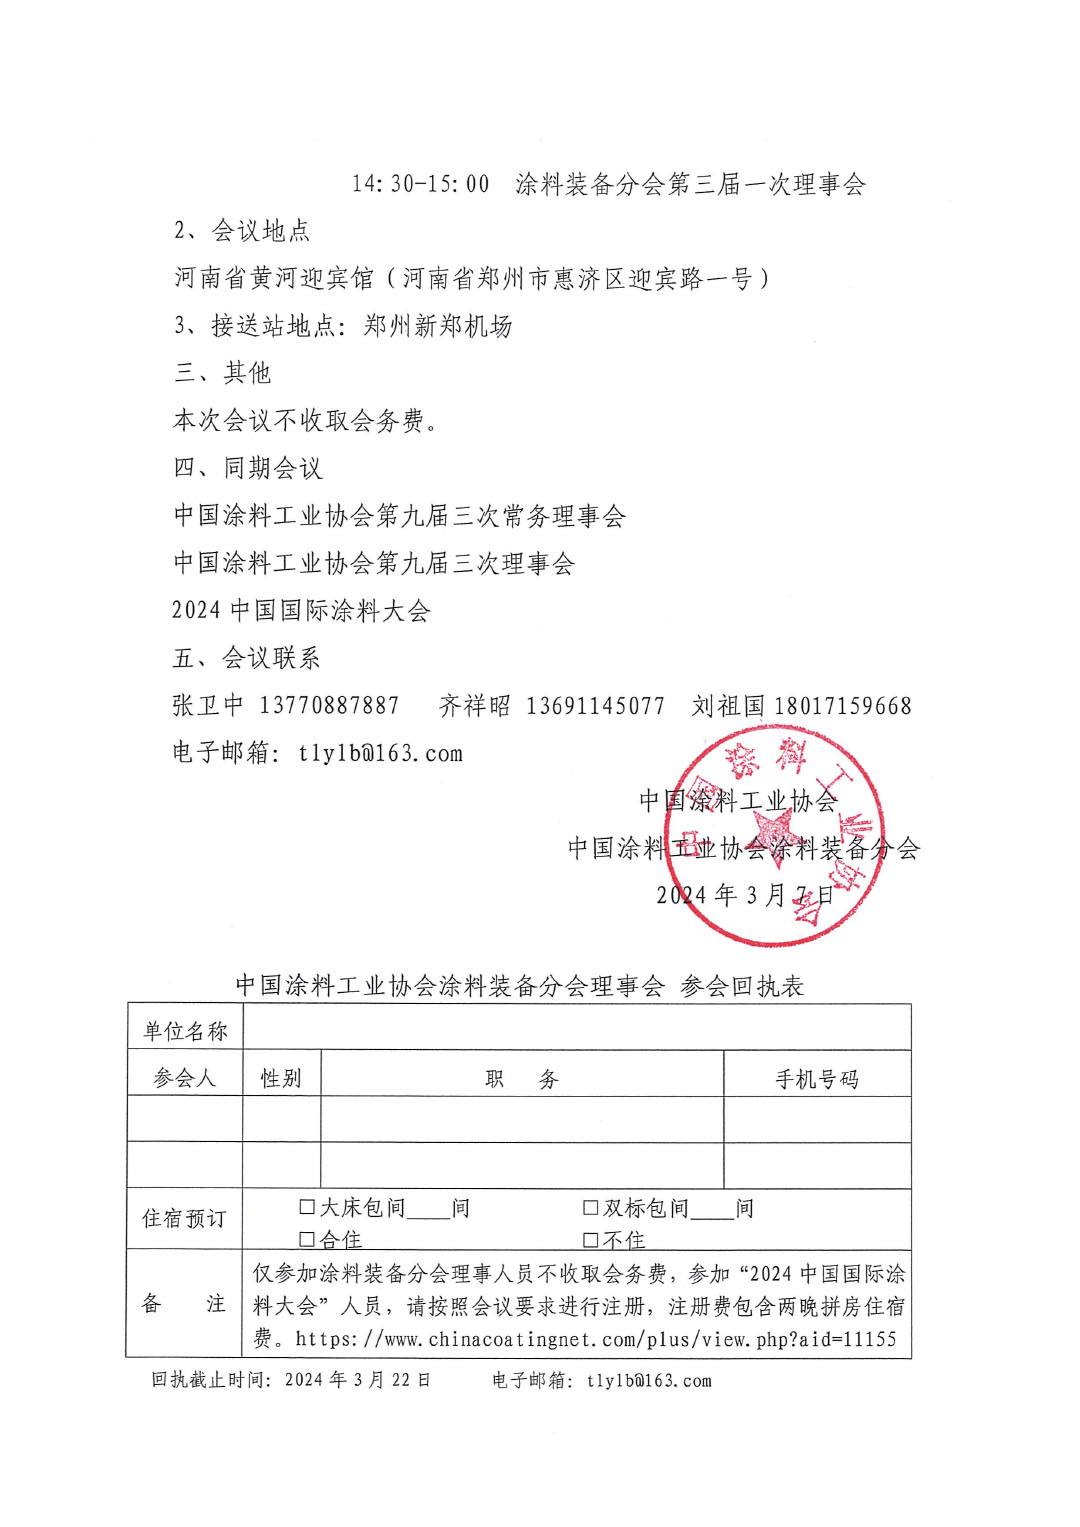 關于召開中國涂料工業協會涂料裝備分會理事會的通知-2